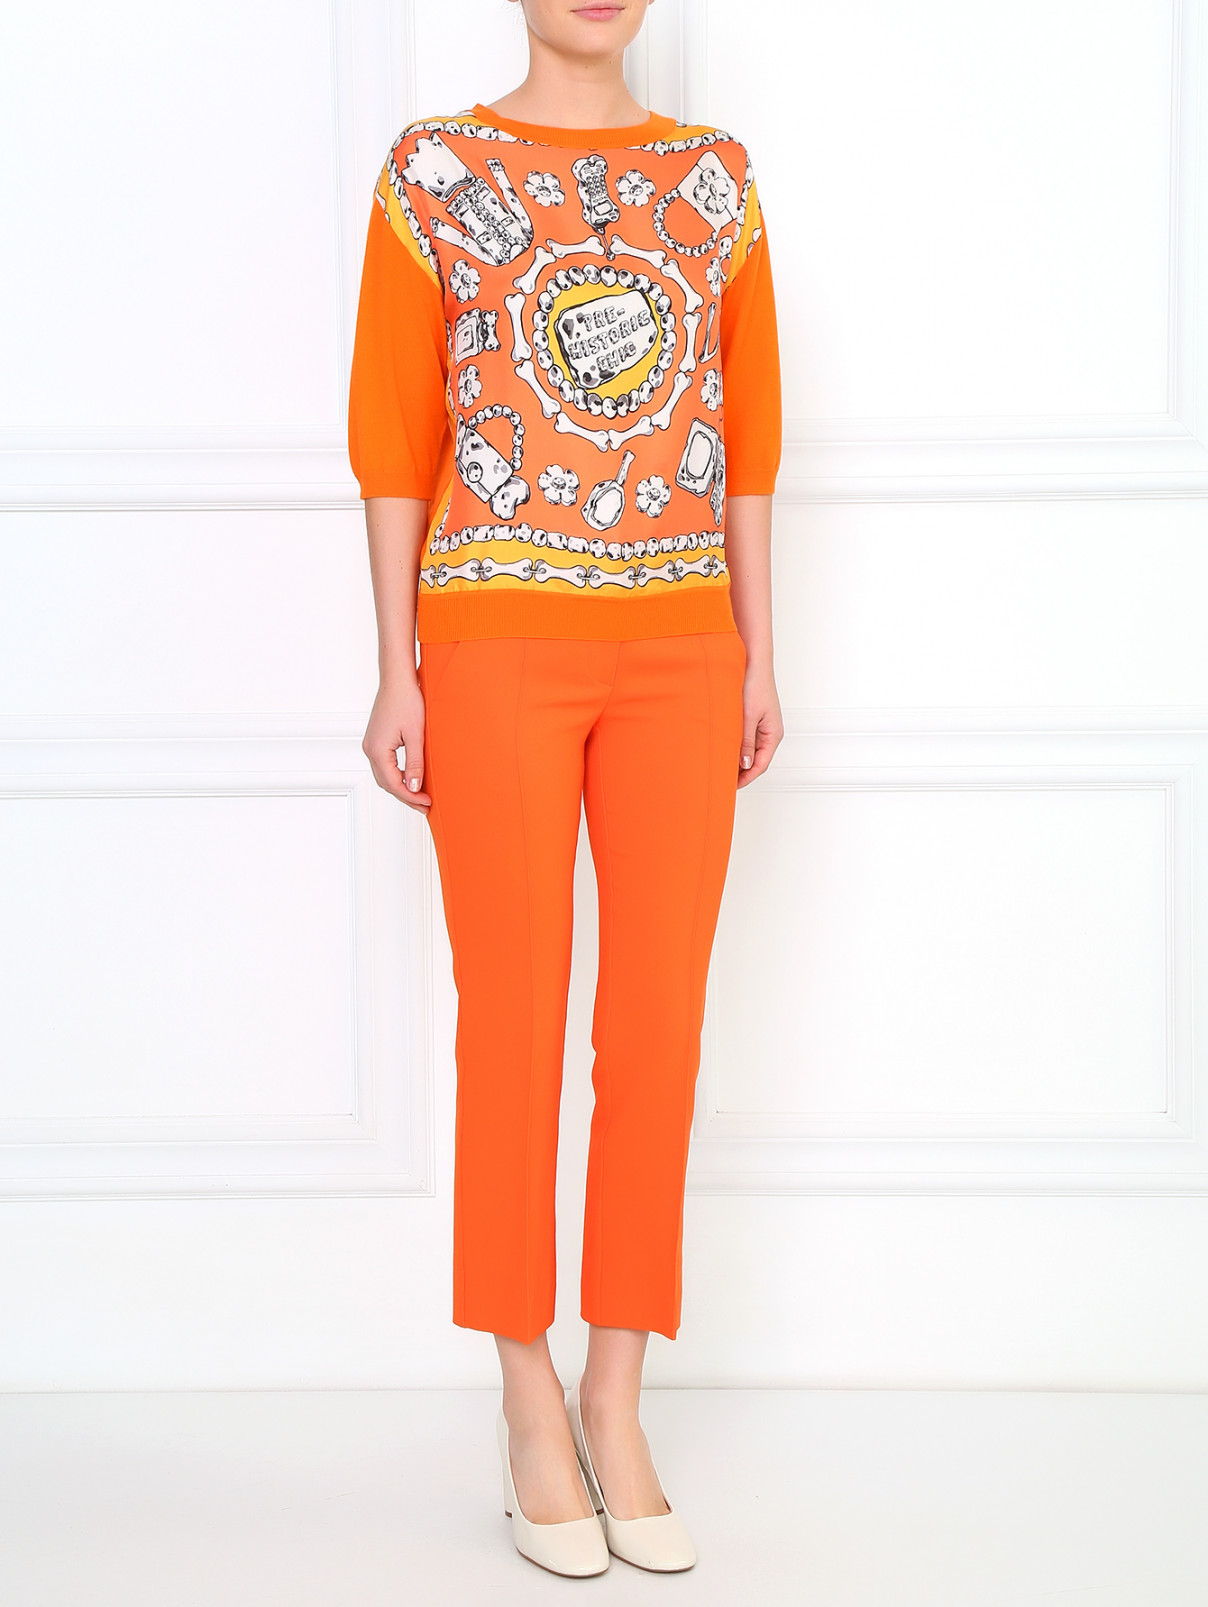 Узкие брюки с боковыми карманами Sportmax  –  Модель Общий вид  – Цвет:  Оранжевый